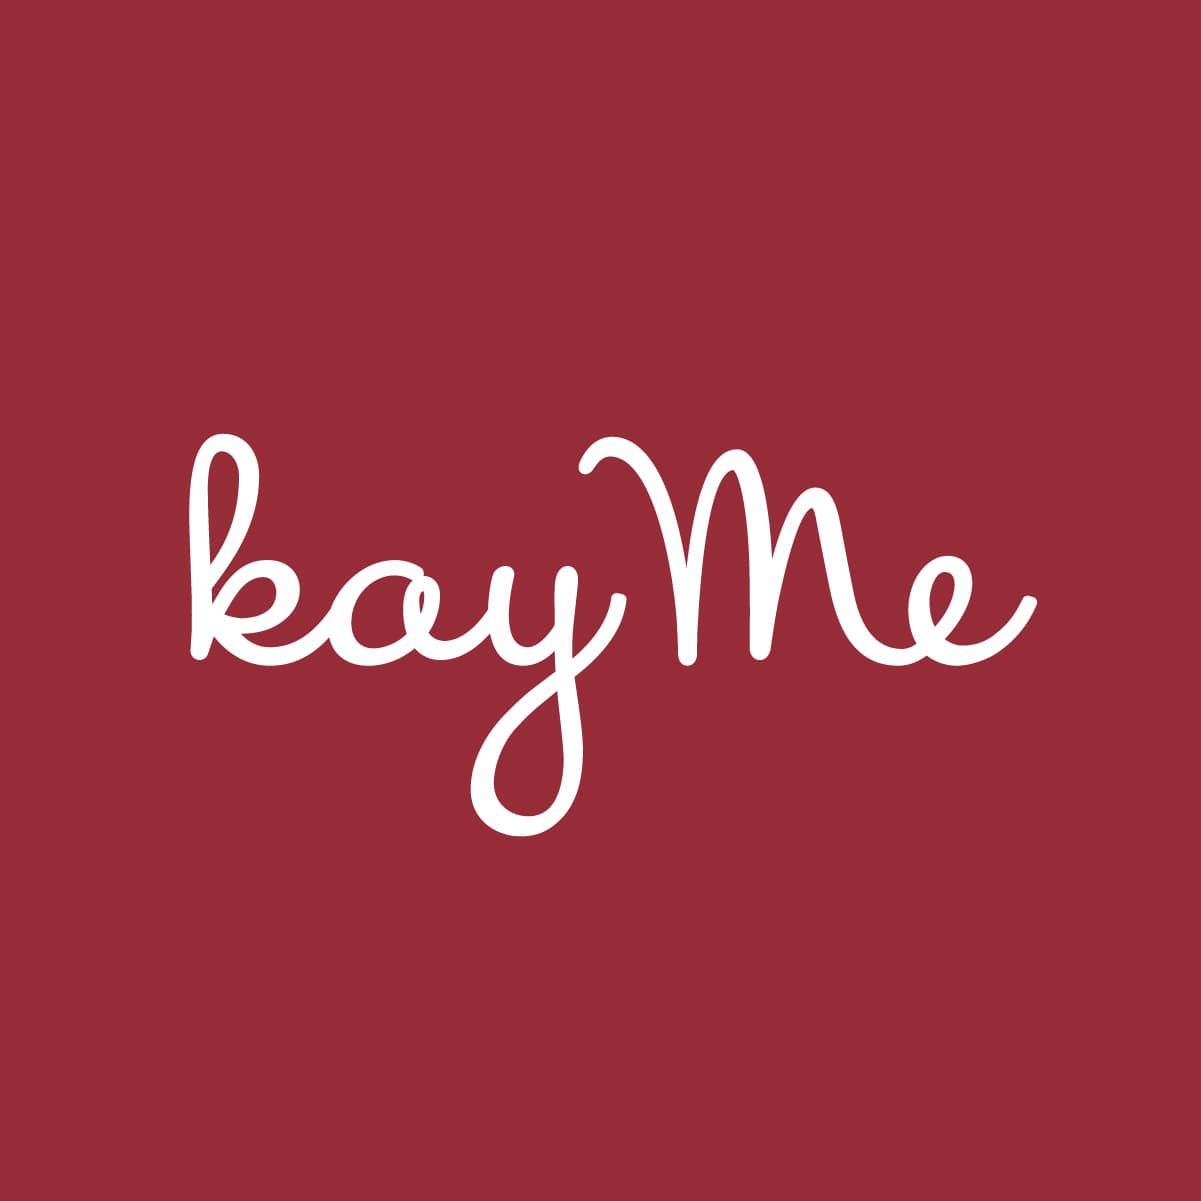 kayme-image-logo.jpg